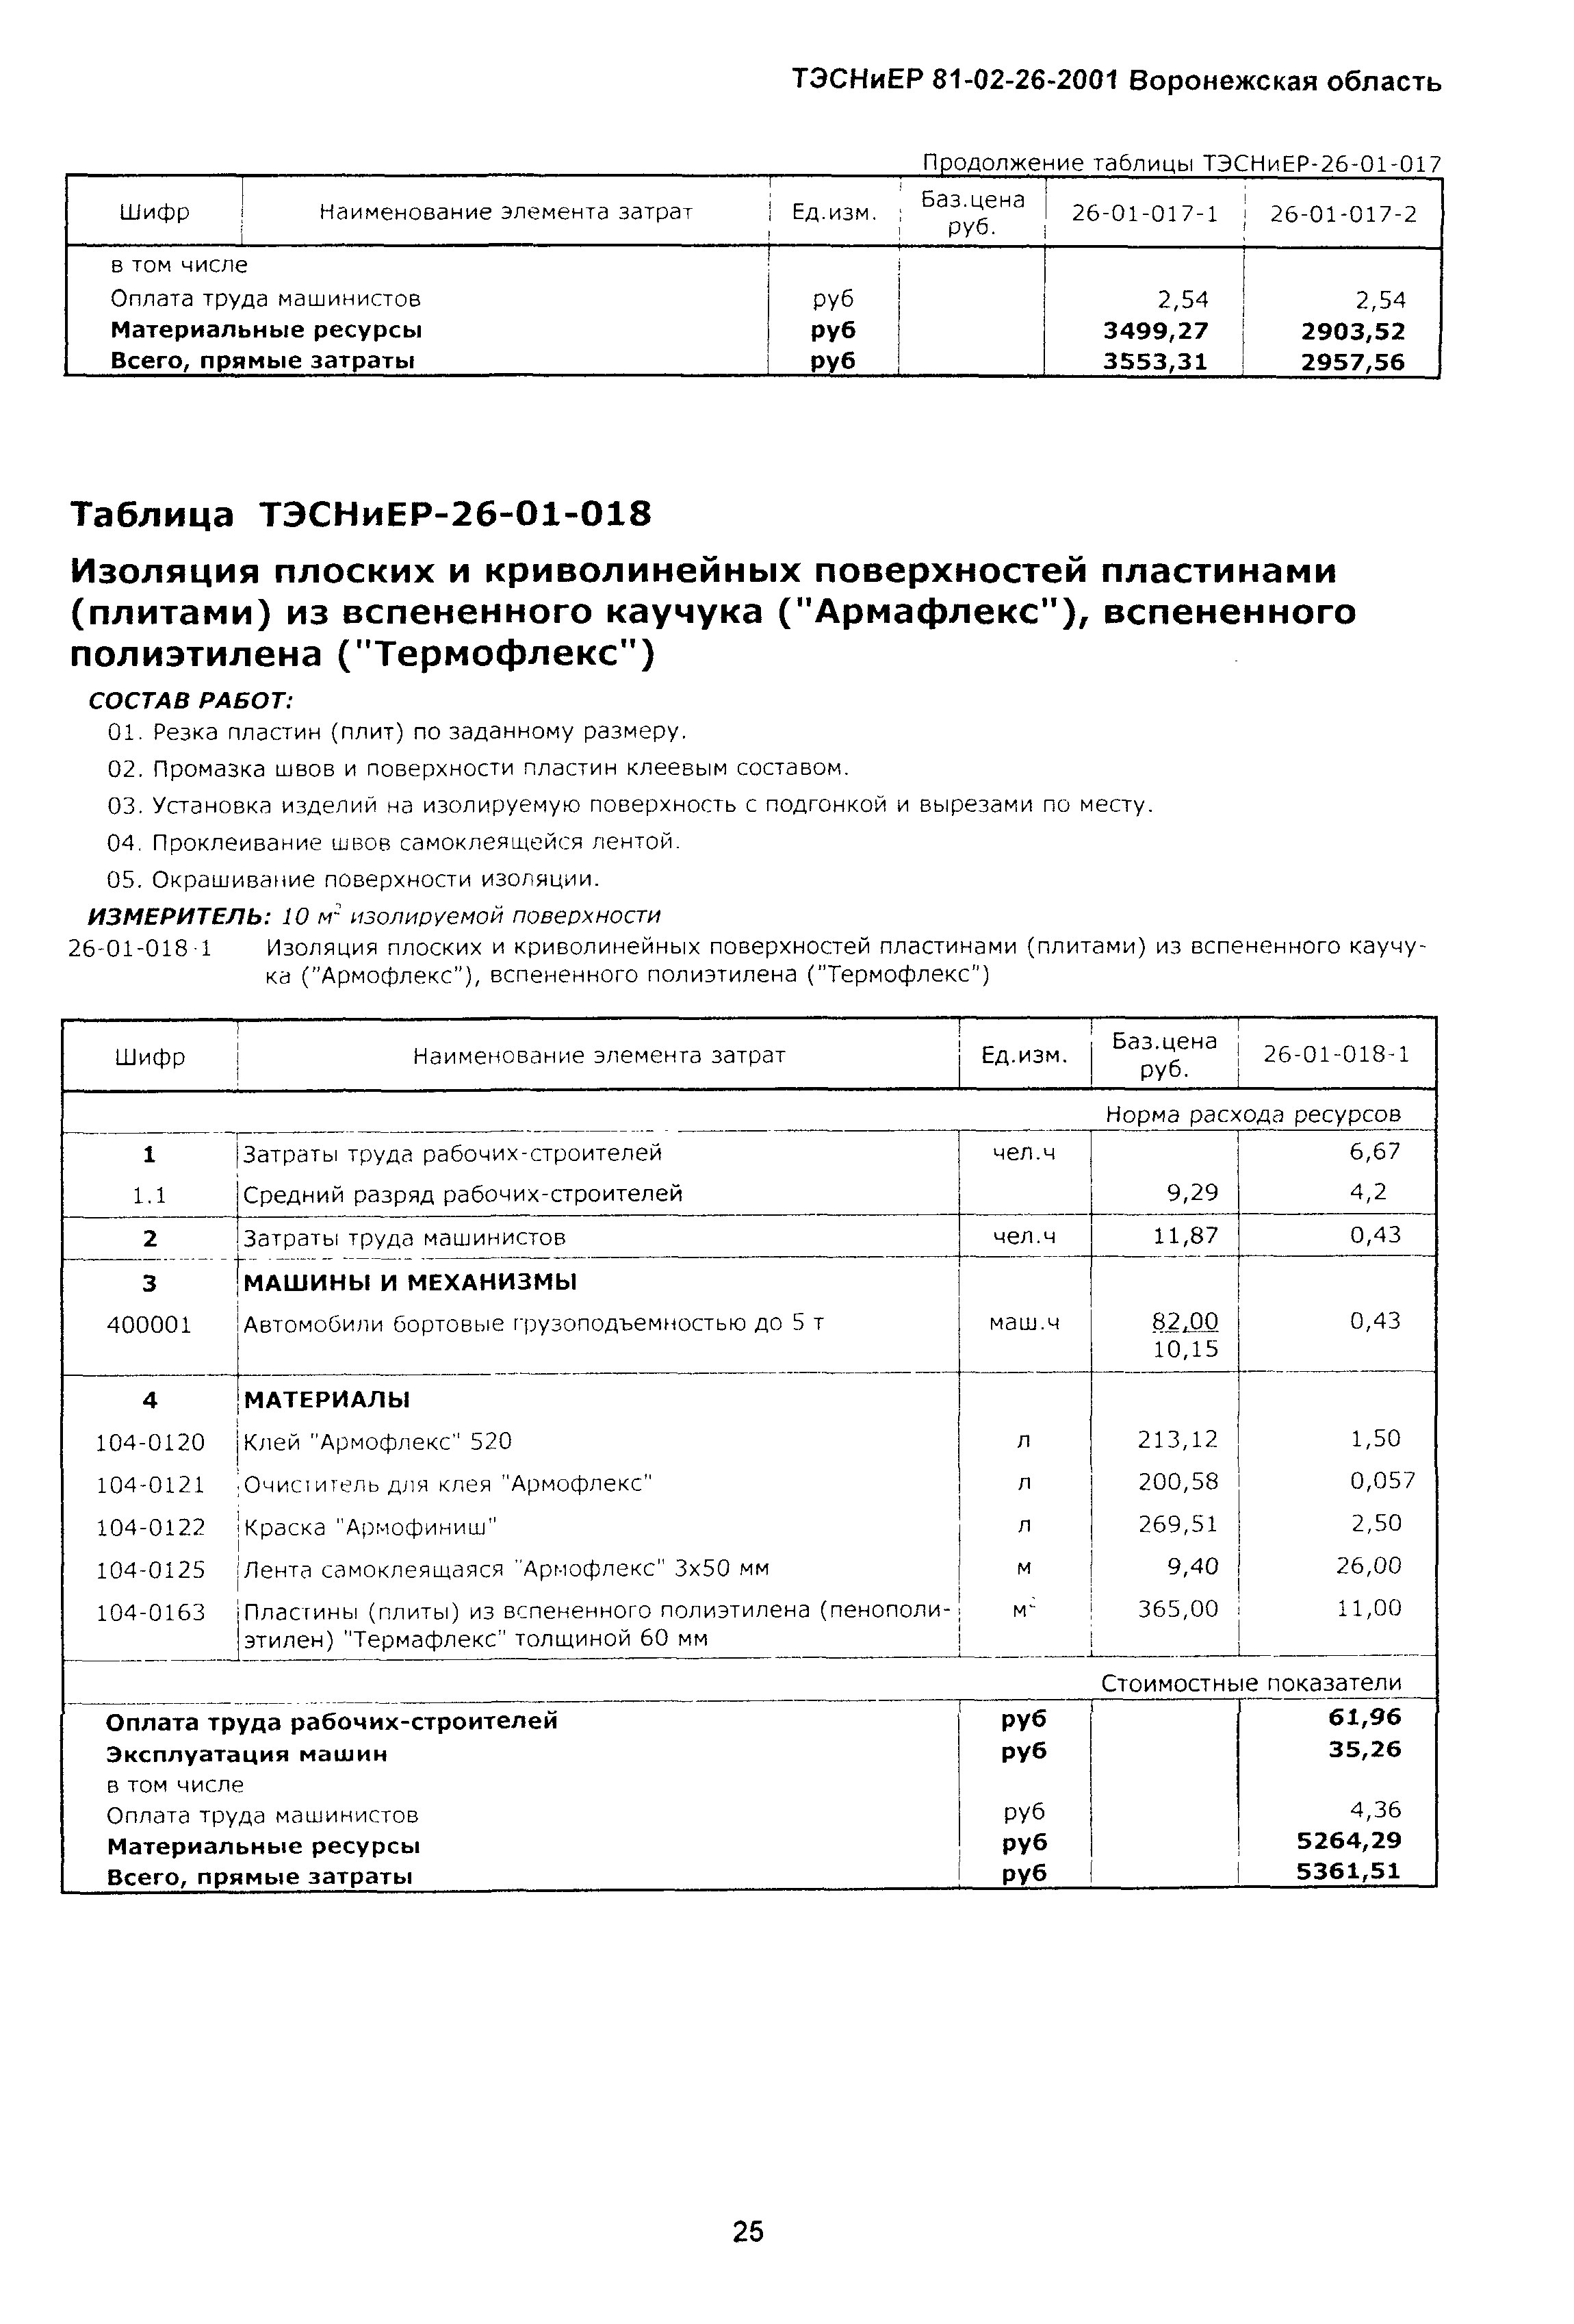 ТЭСНиЕР Воронежской области 81-02-26-2001